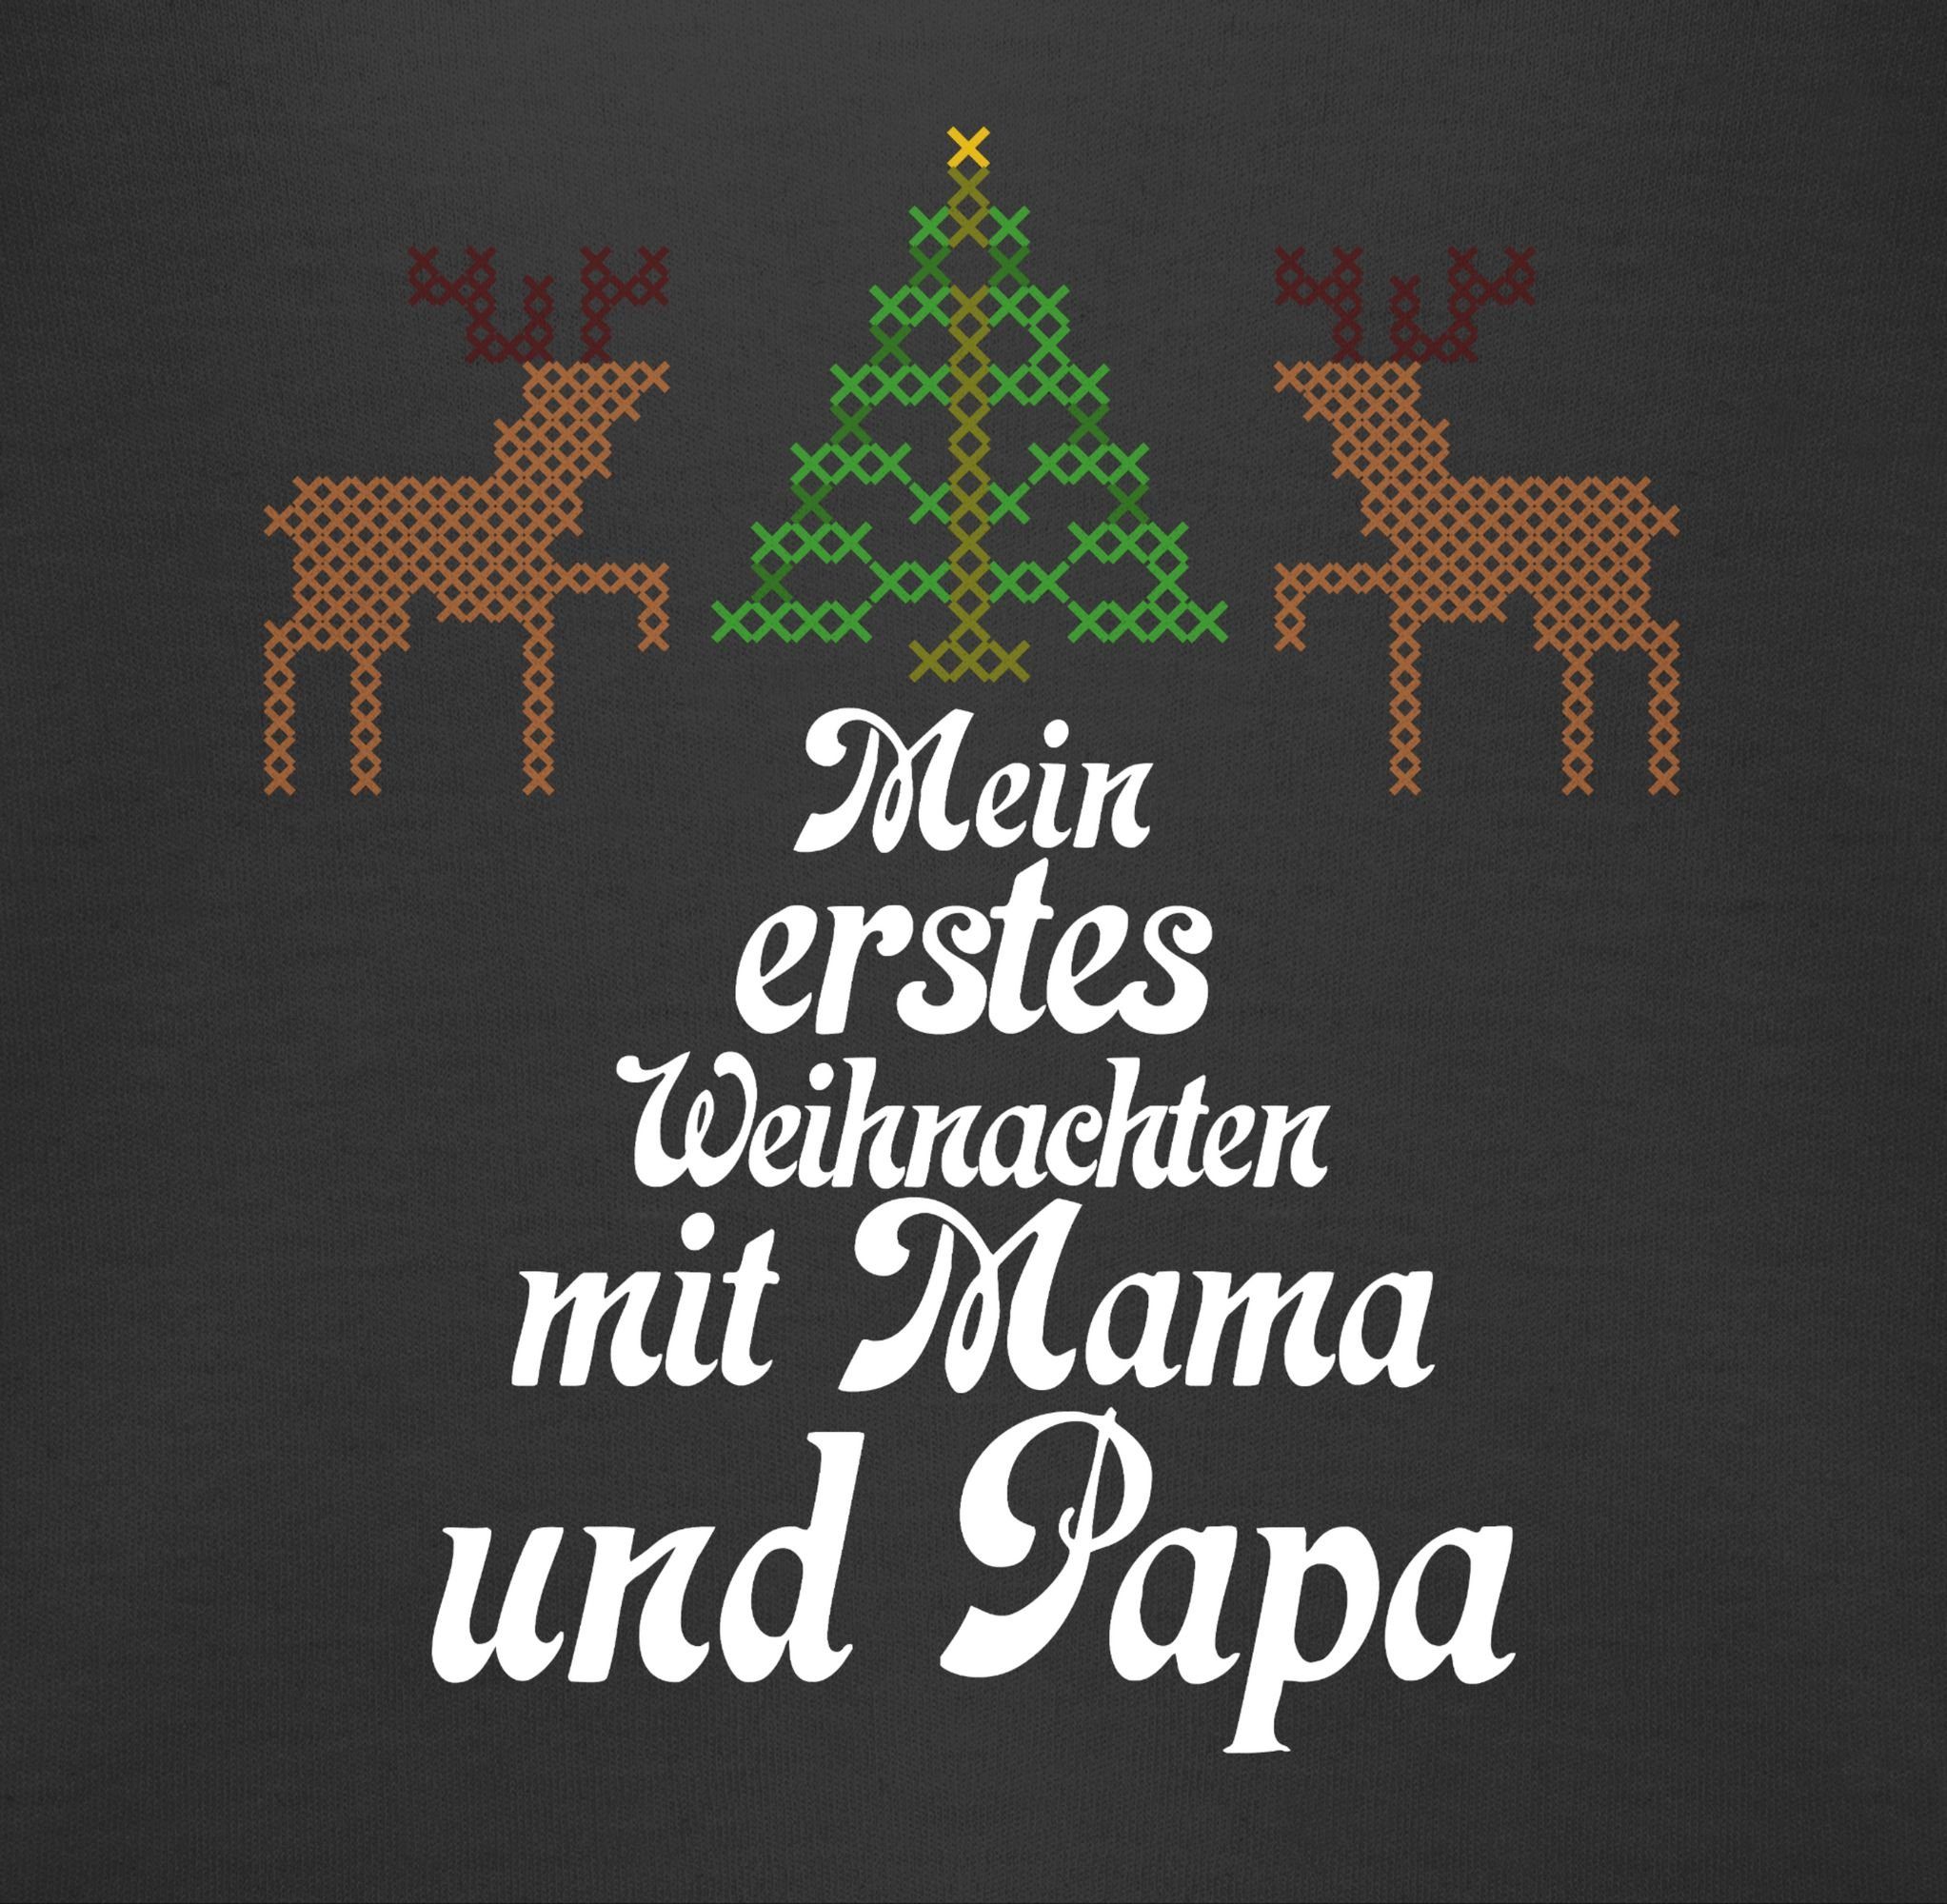 Baby Rentiere - Ugly Mein sweater Schwarz Shirtracer Shirtbody Weihnachten - Kleidung Weihnachten erstes 3